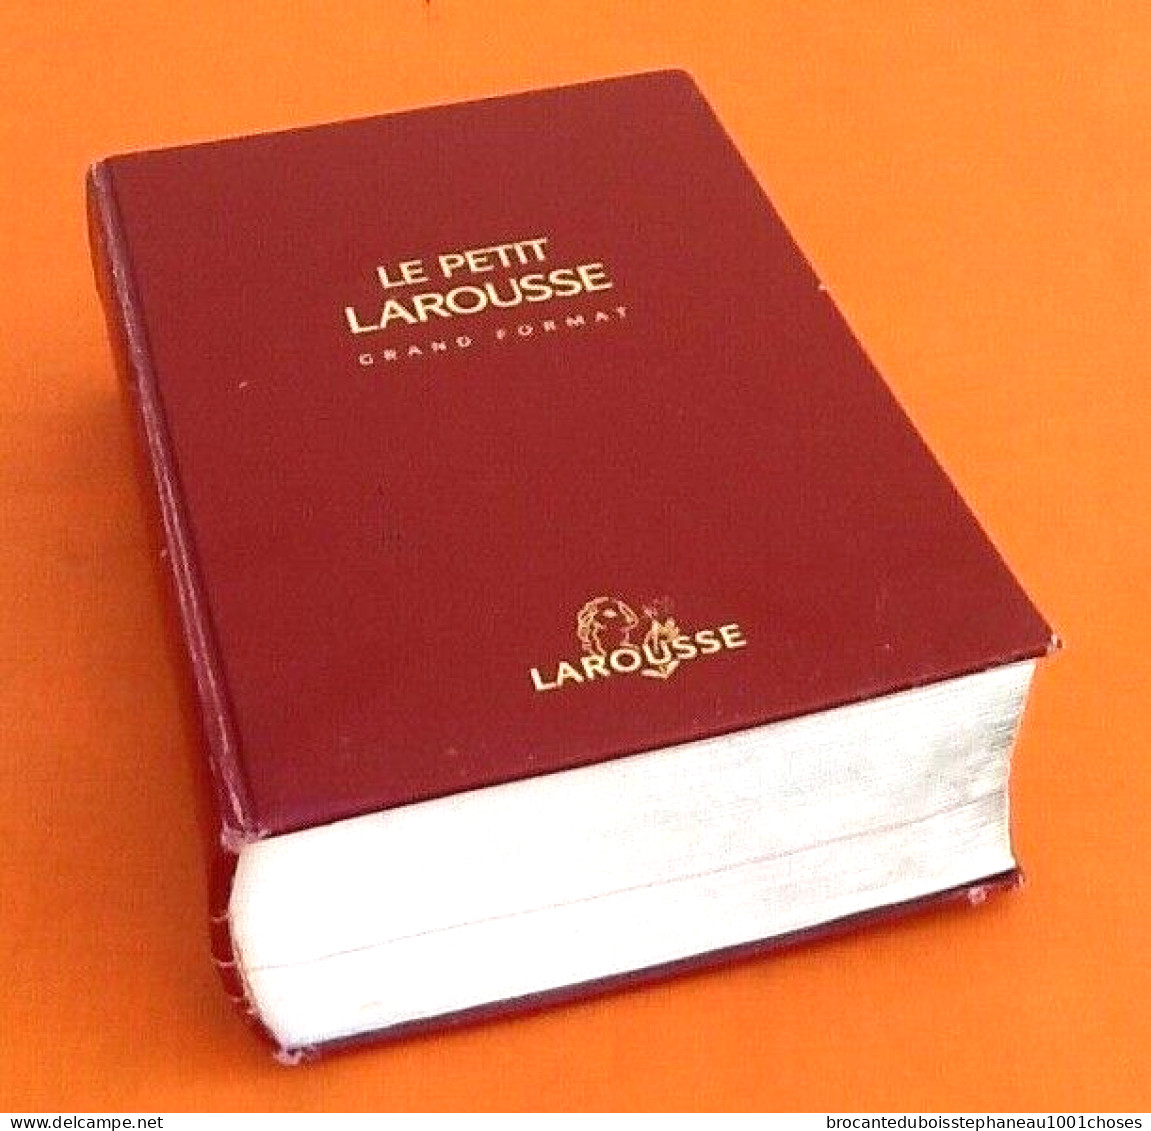 Le Petit Larousse (grand format)  Larousse